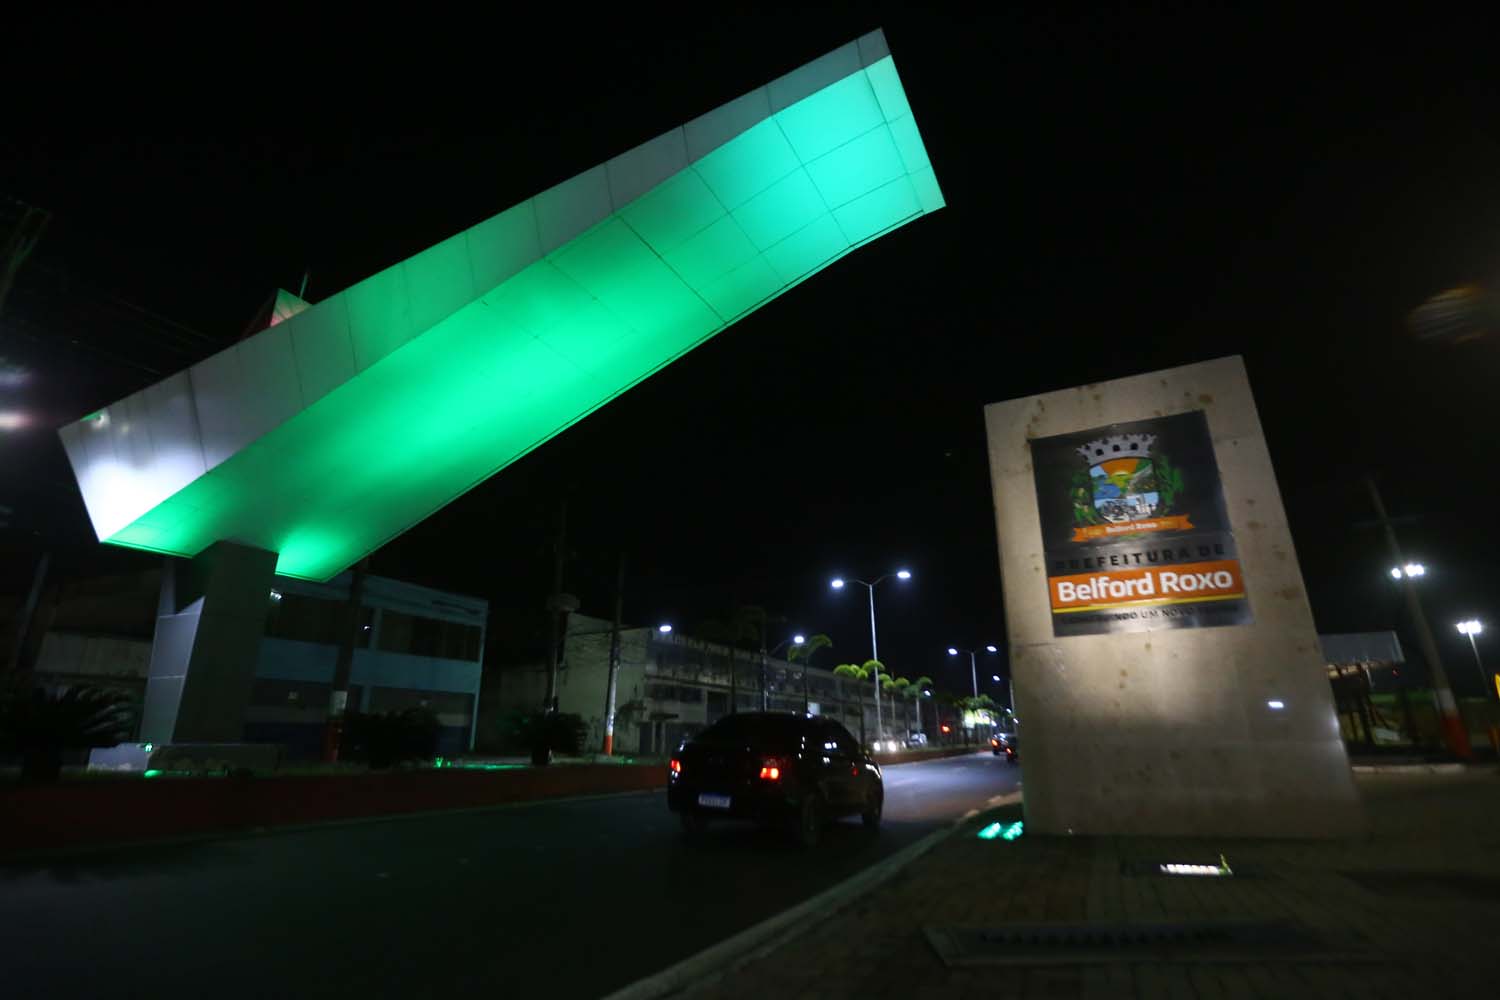 Pórtico de Belford Roxo recebe iluminação verde em homenagem aos profissionais de educação física